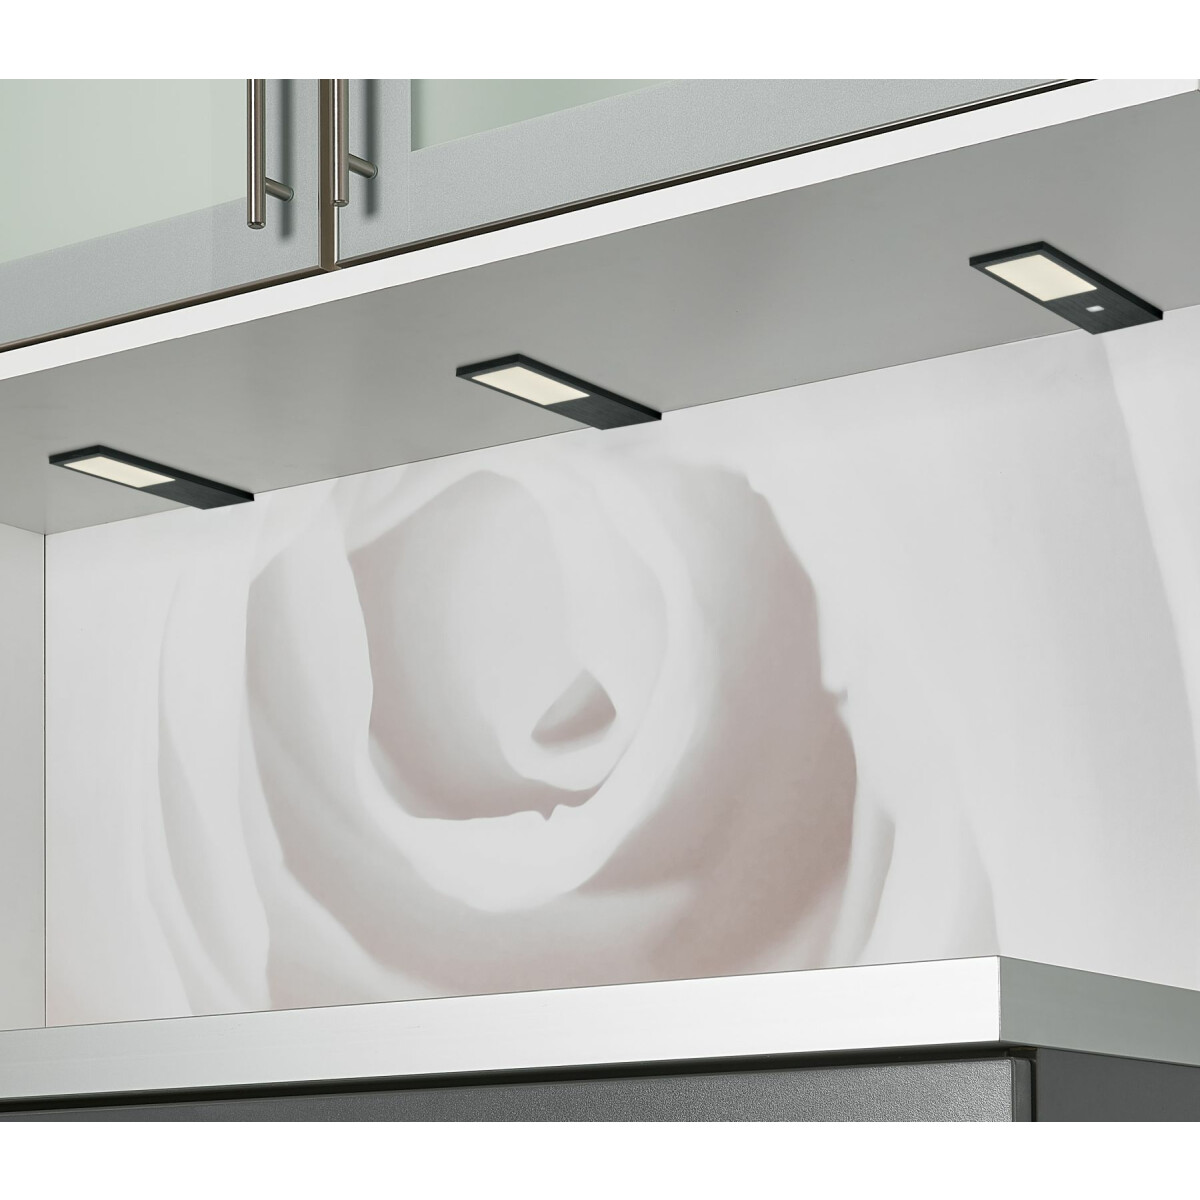 LED Unterbauleuchte Küche 2x4 W, Küchenleuchte Gamma, warmweiss